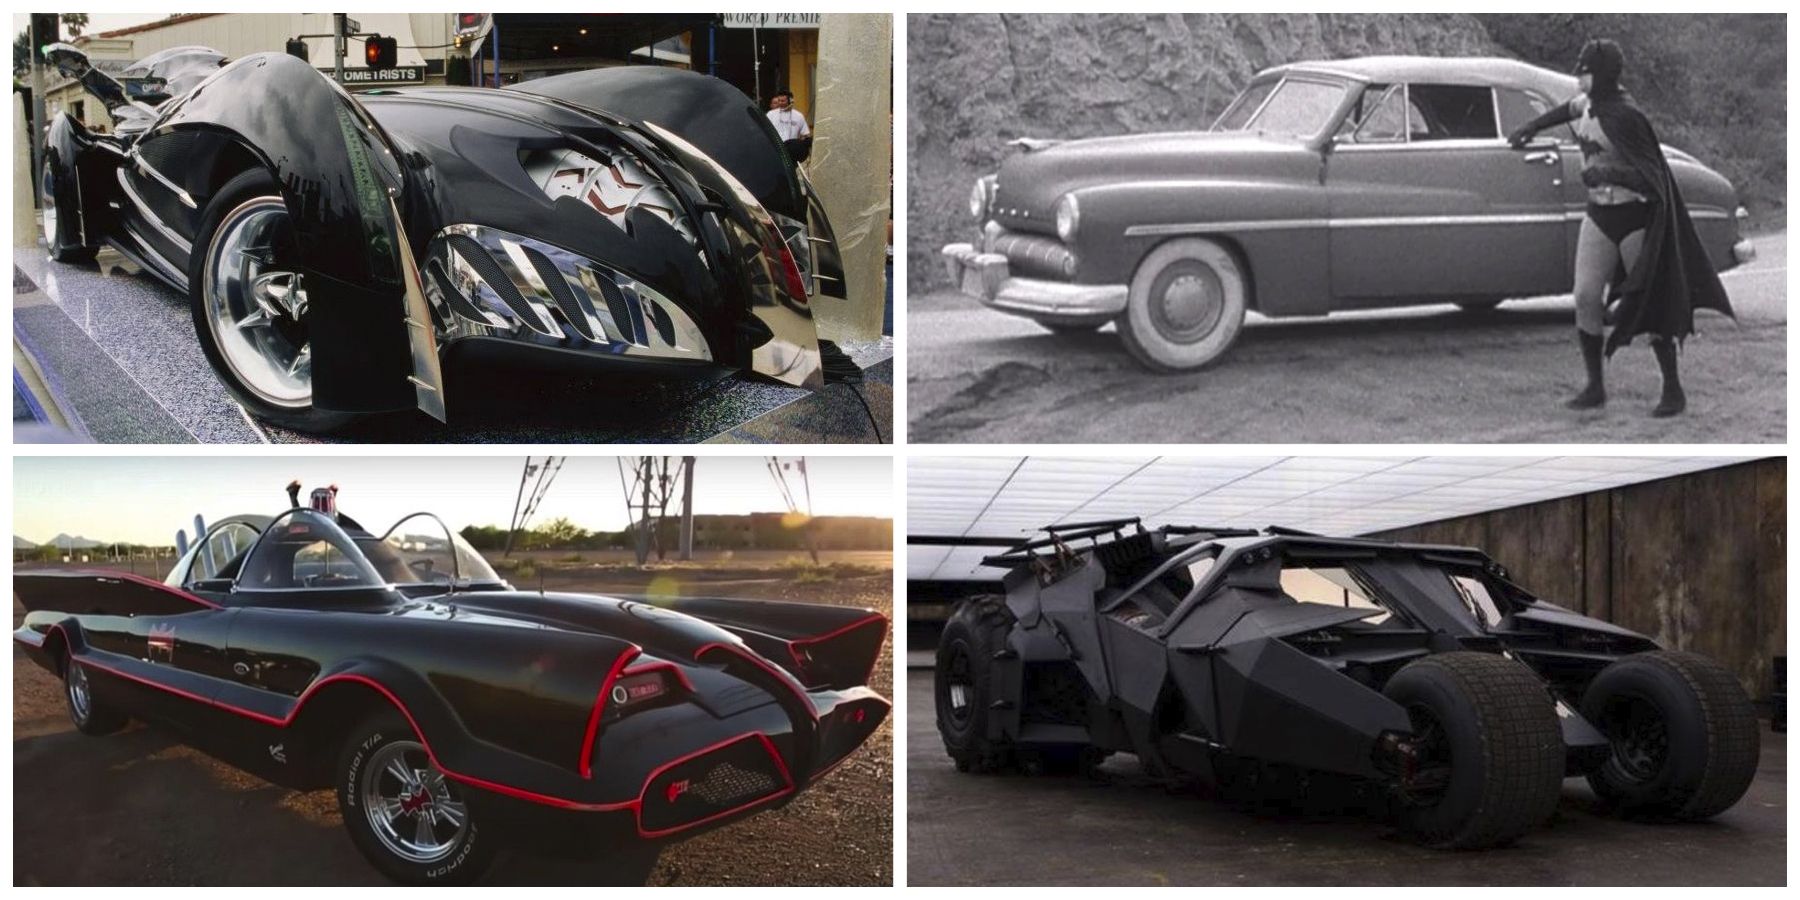 Batmobiles down the ages - check out Batman's best vehicles